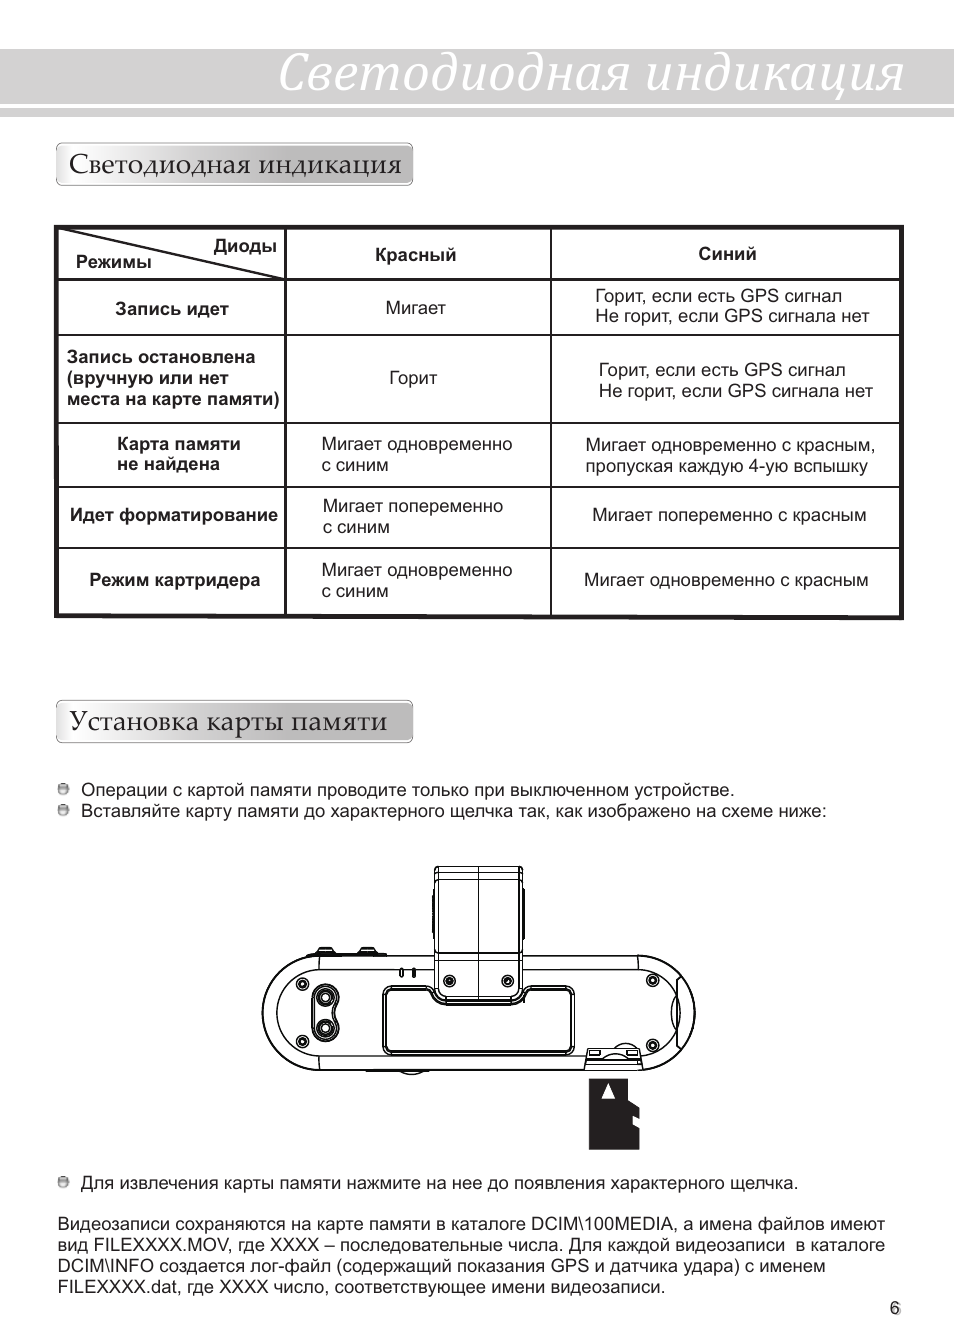 Инструкция по эксплуатации видеорегистратора каркам р2